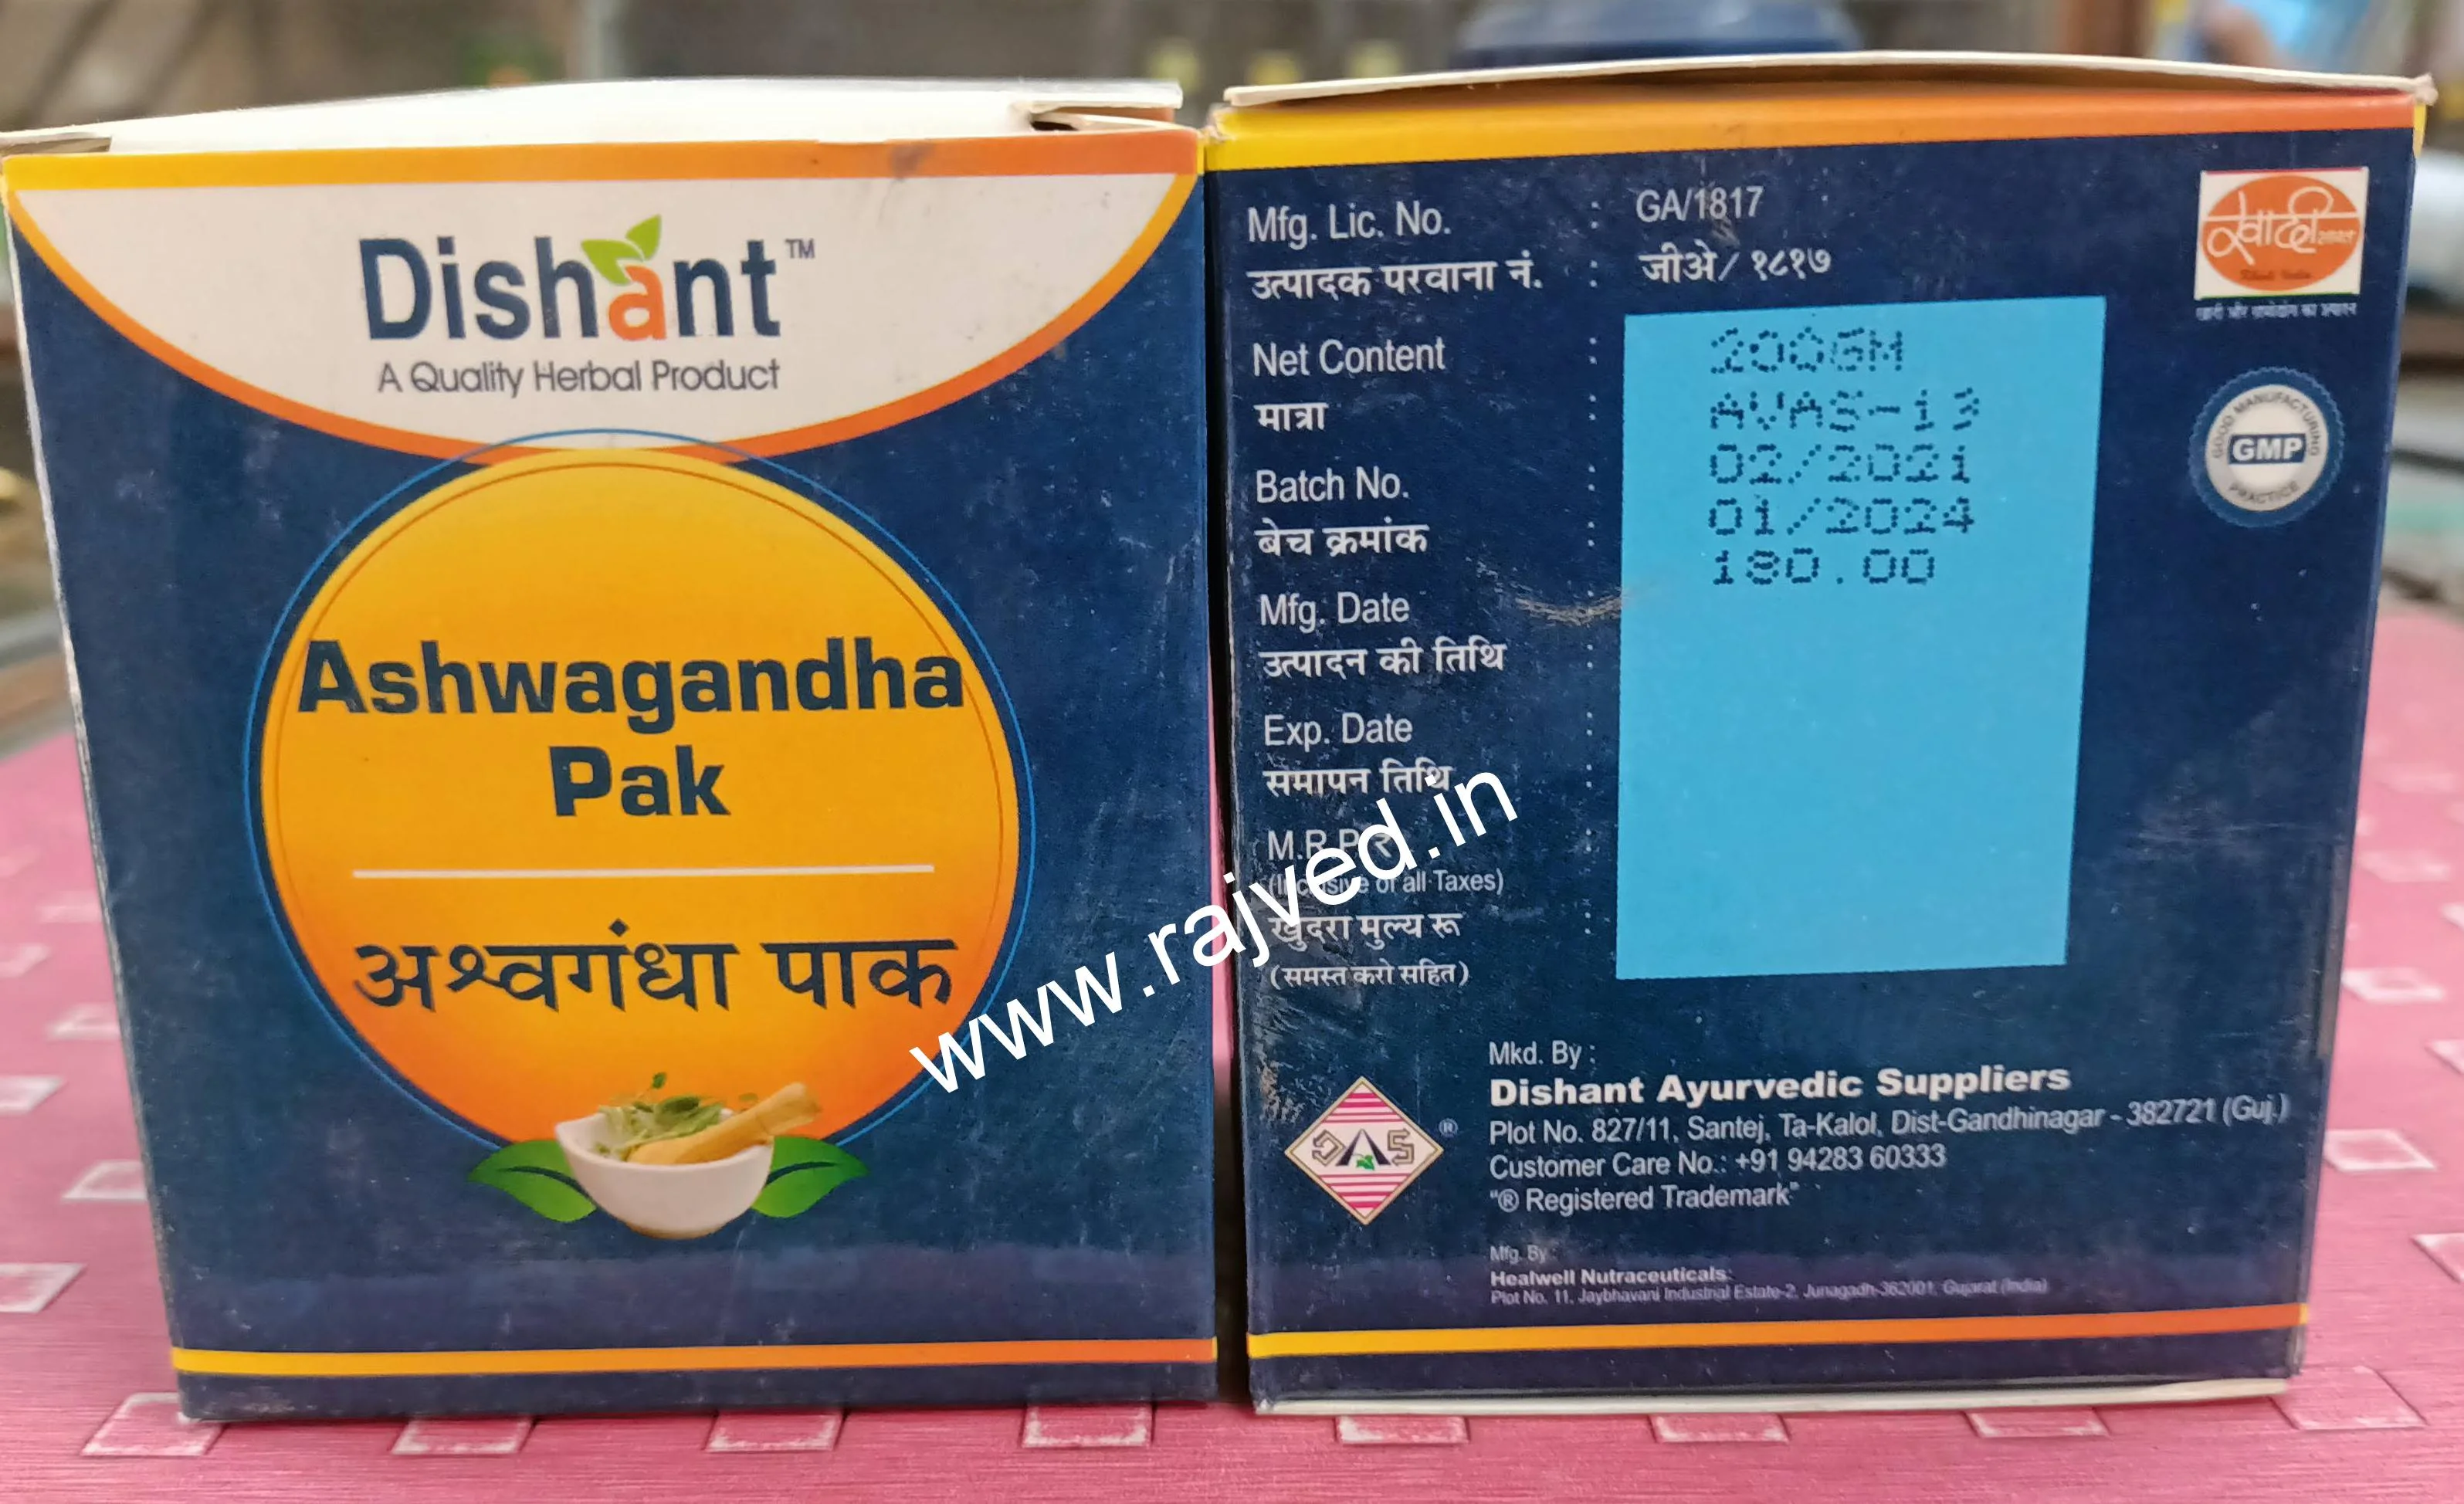 ashwagandha pak 200 gm dishant ayurvedic suppliers